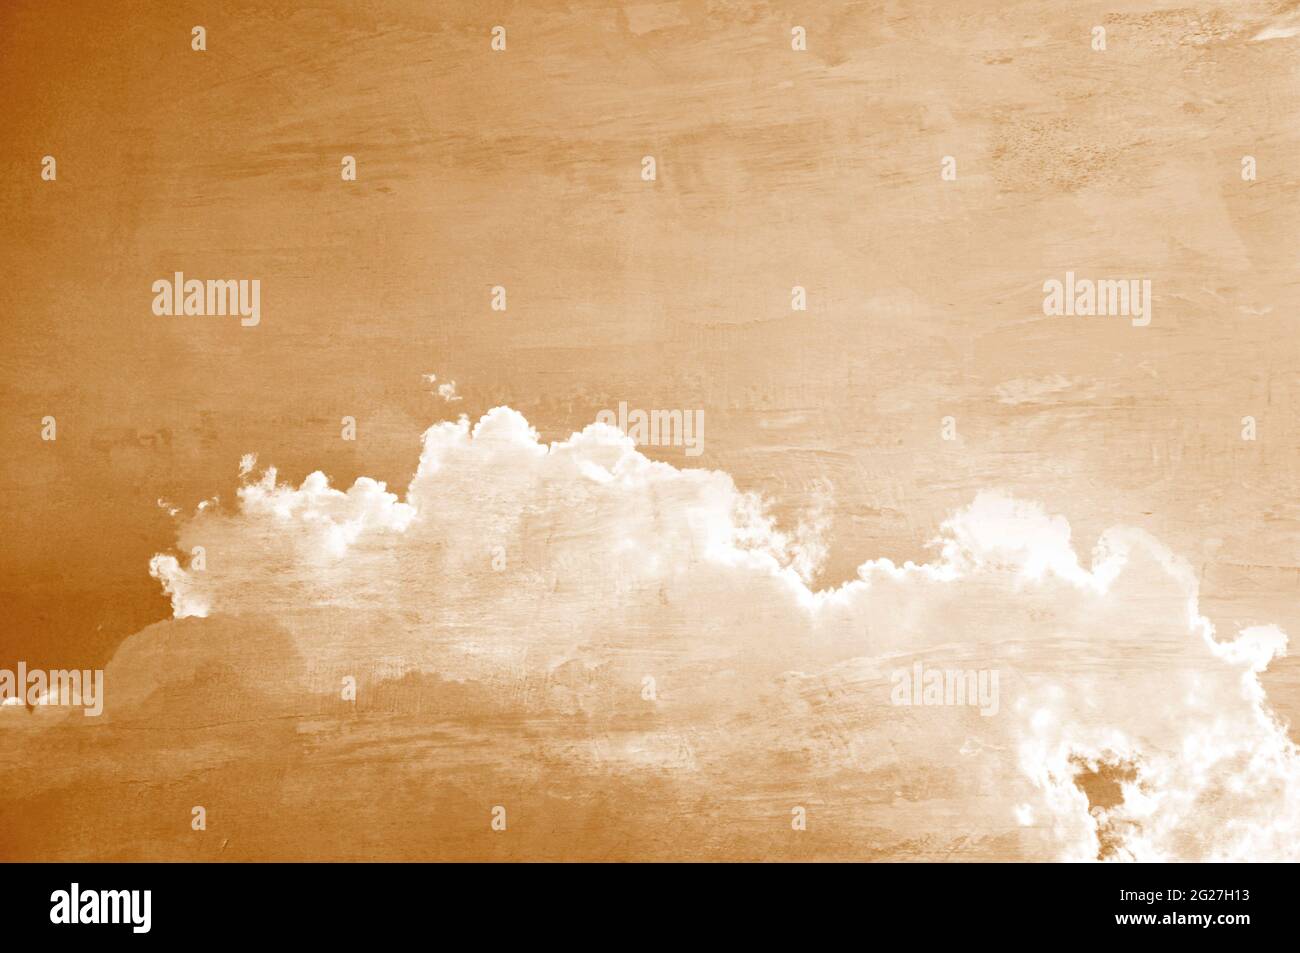 Immagine in stile retrò di cielo e nuvole con effetto seppia Foto Stock